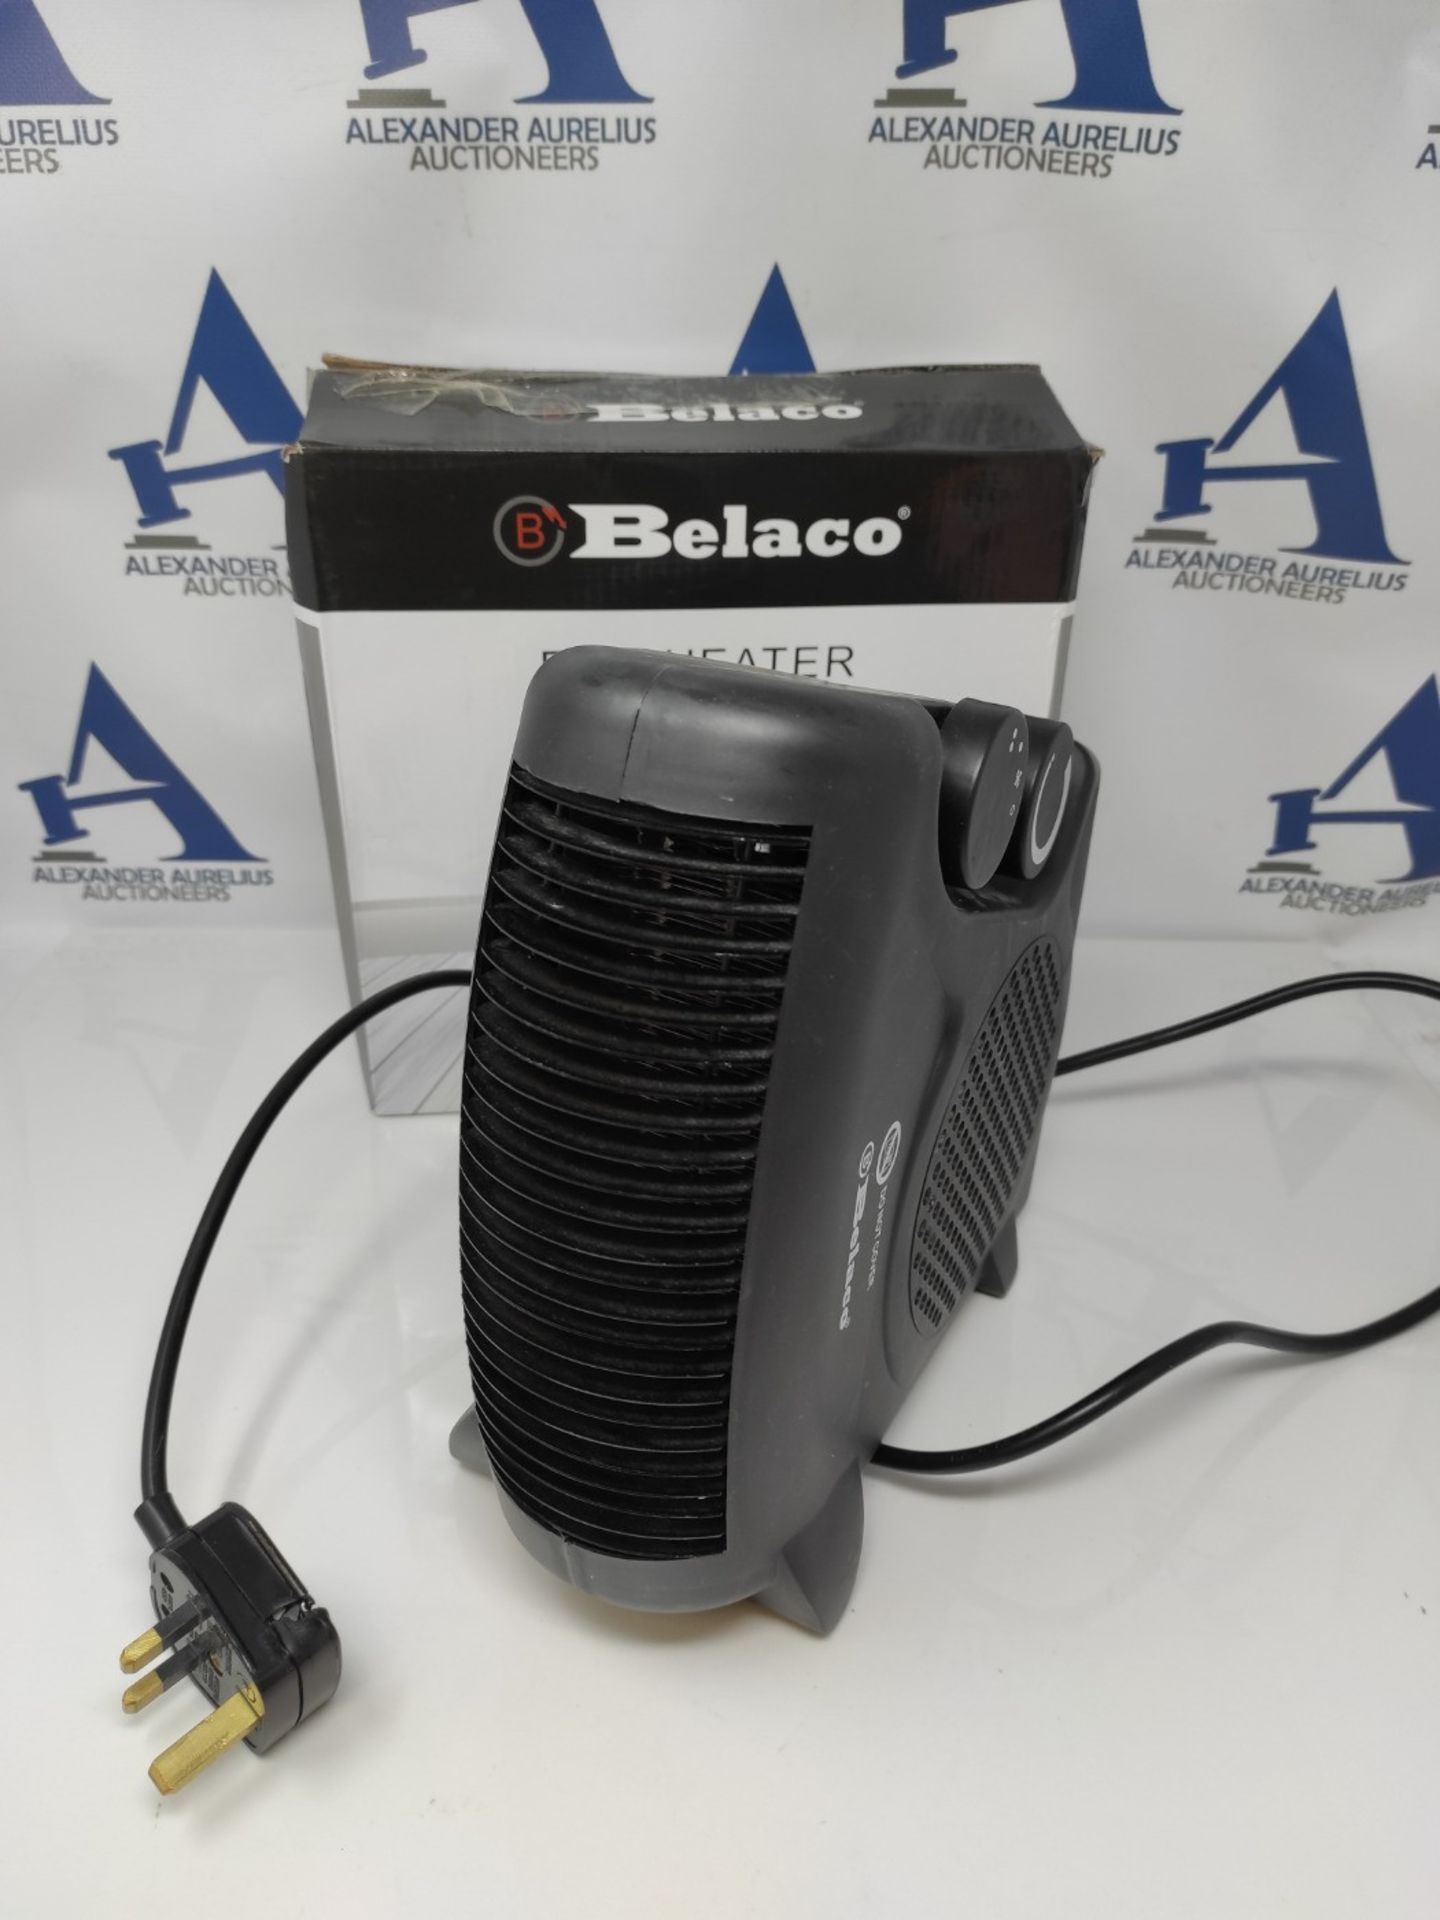 Belaco Fan Heater 2 Heat Settings 1000/2000W Electric Heaters Overheat Protection BFH2